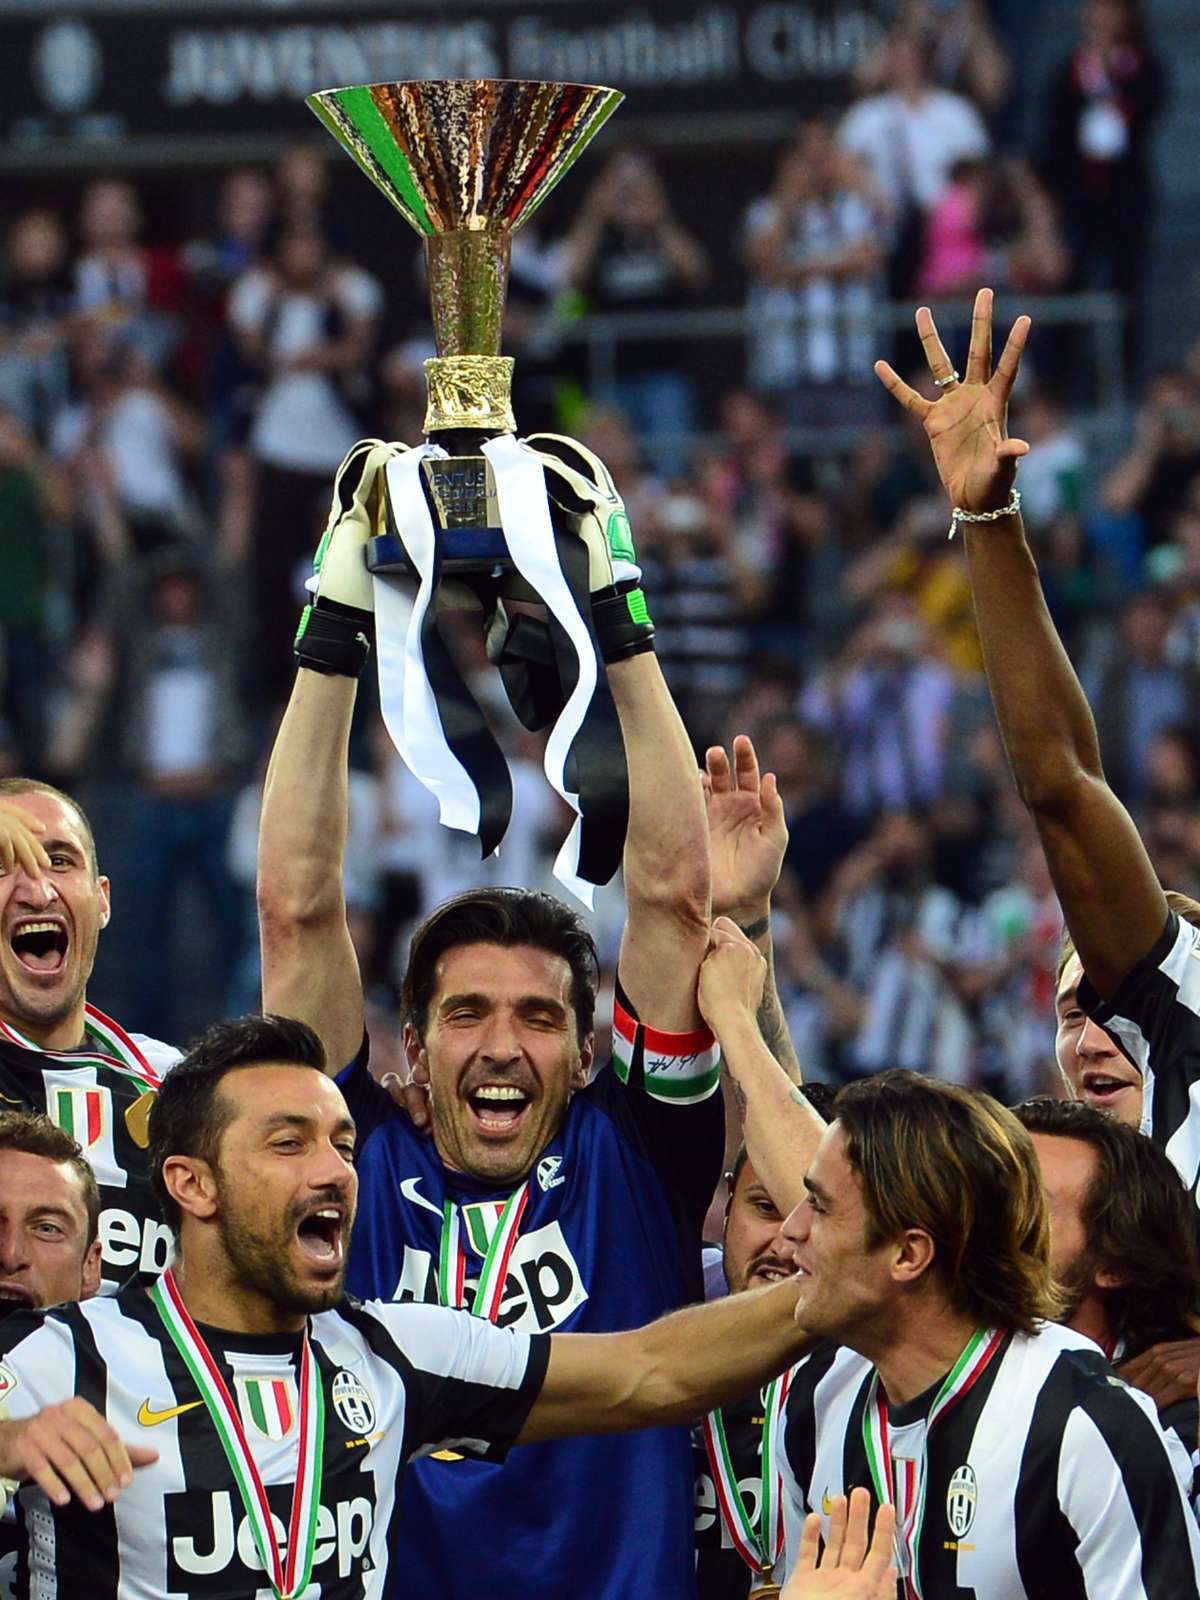 Encerrado pela pandemia, Italiano Feminino declara Juventus campeã da  temporada, futebol internacional